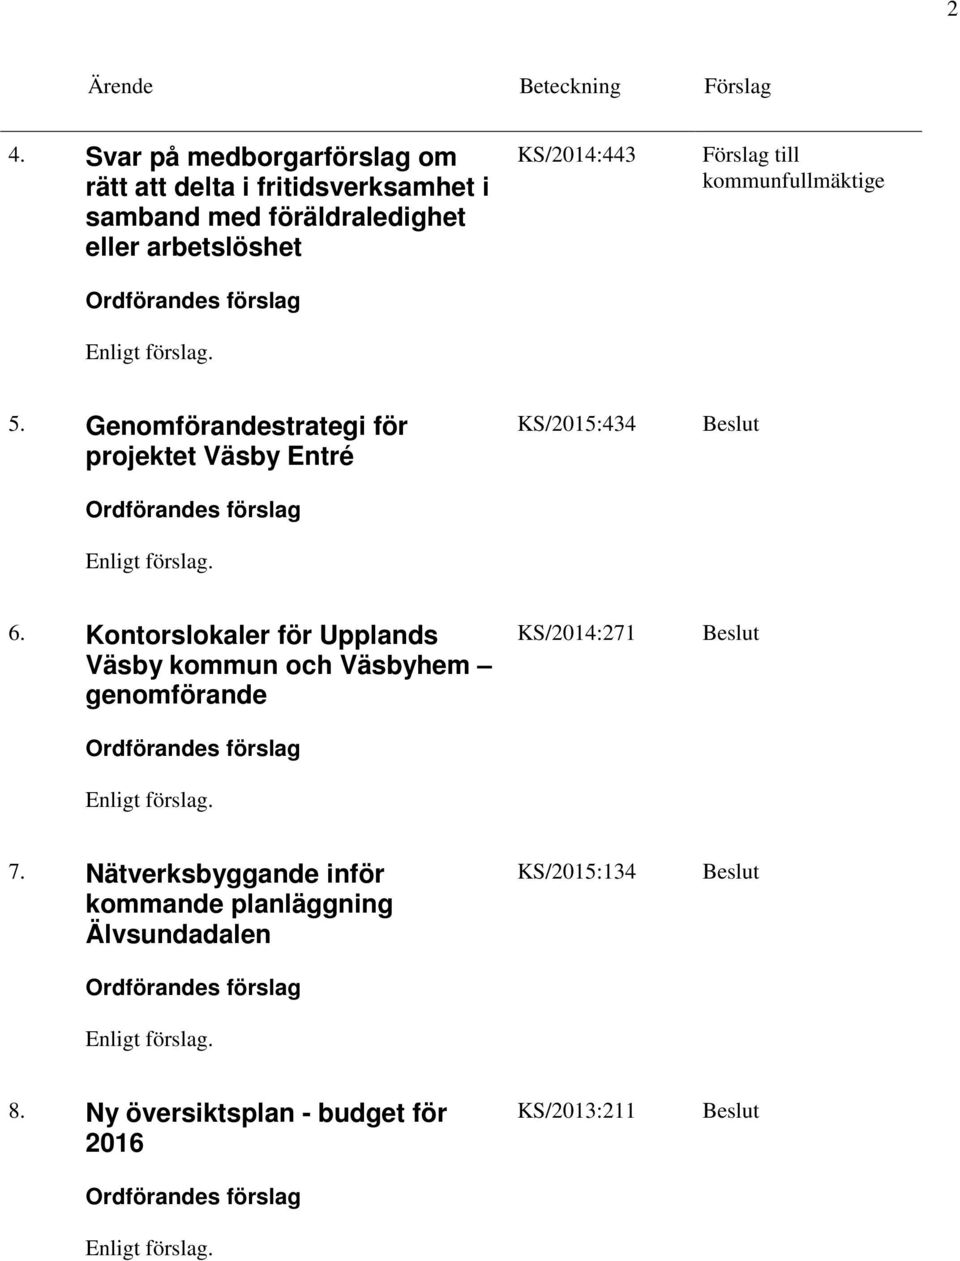 Kontorslokaler för Upplands Väsby kommun och Väsbyhem genomförande KS/2014:271 7.